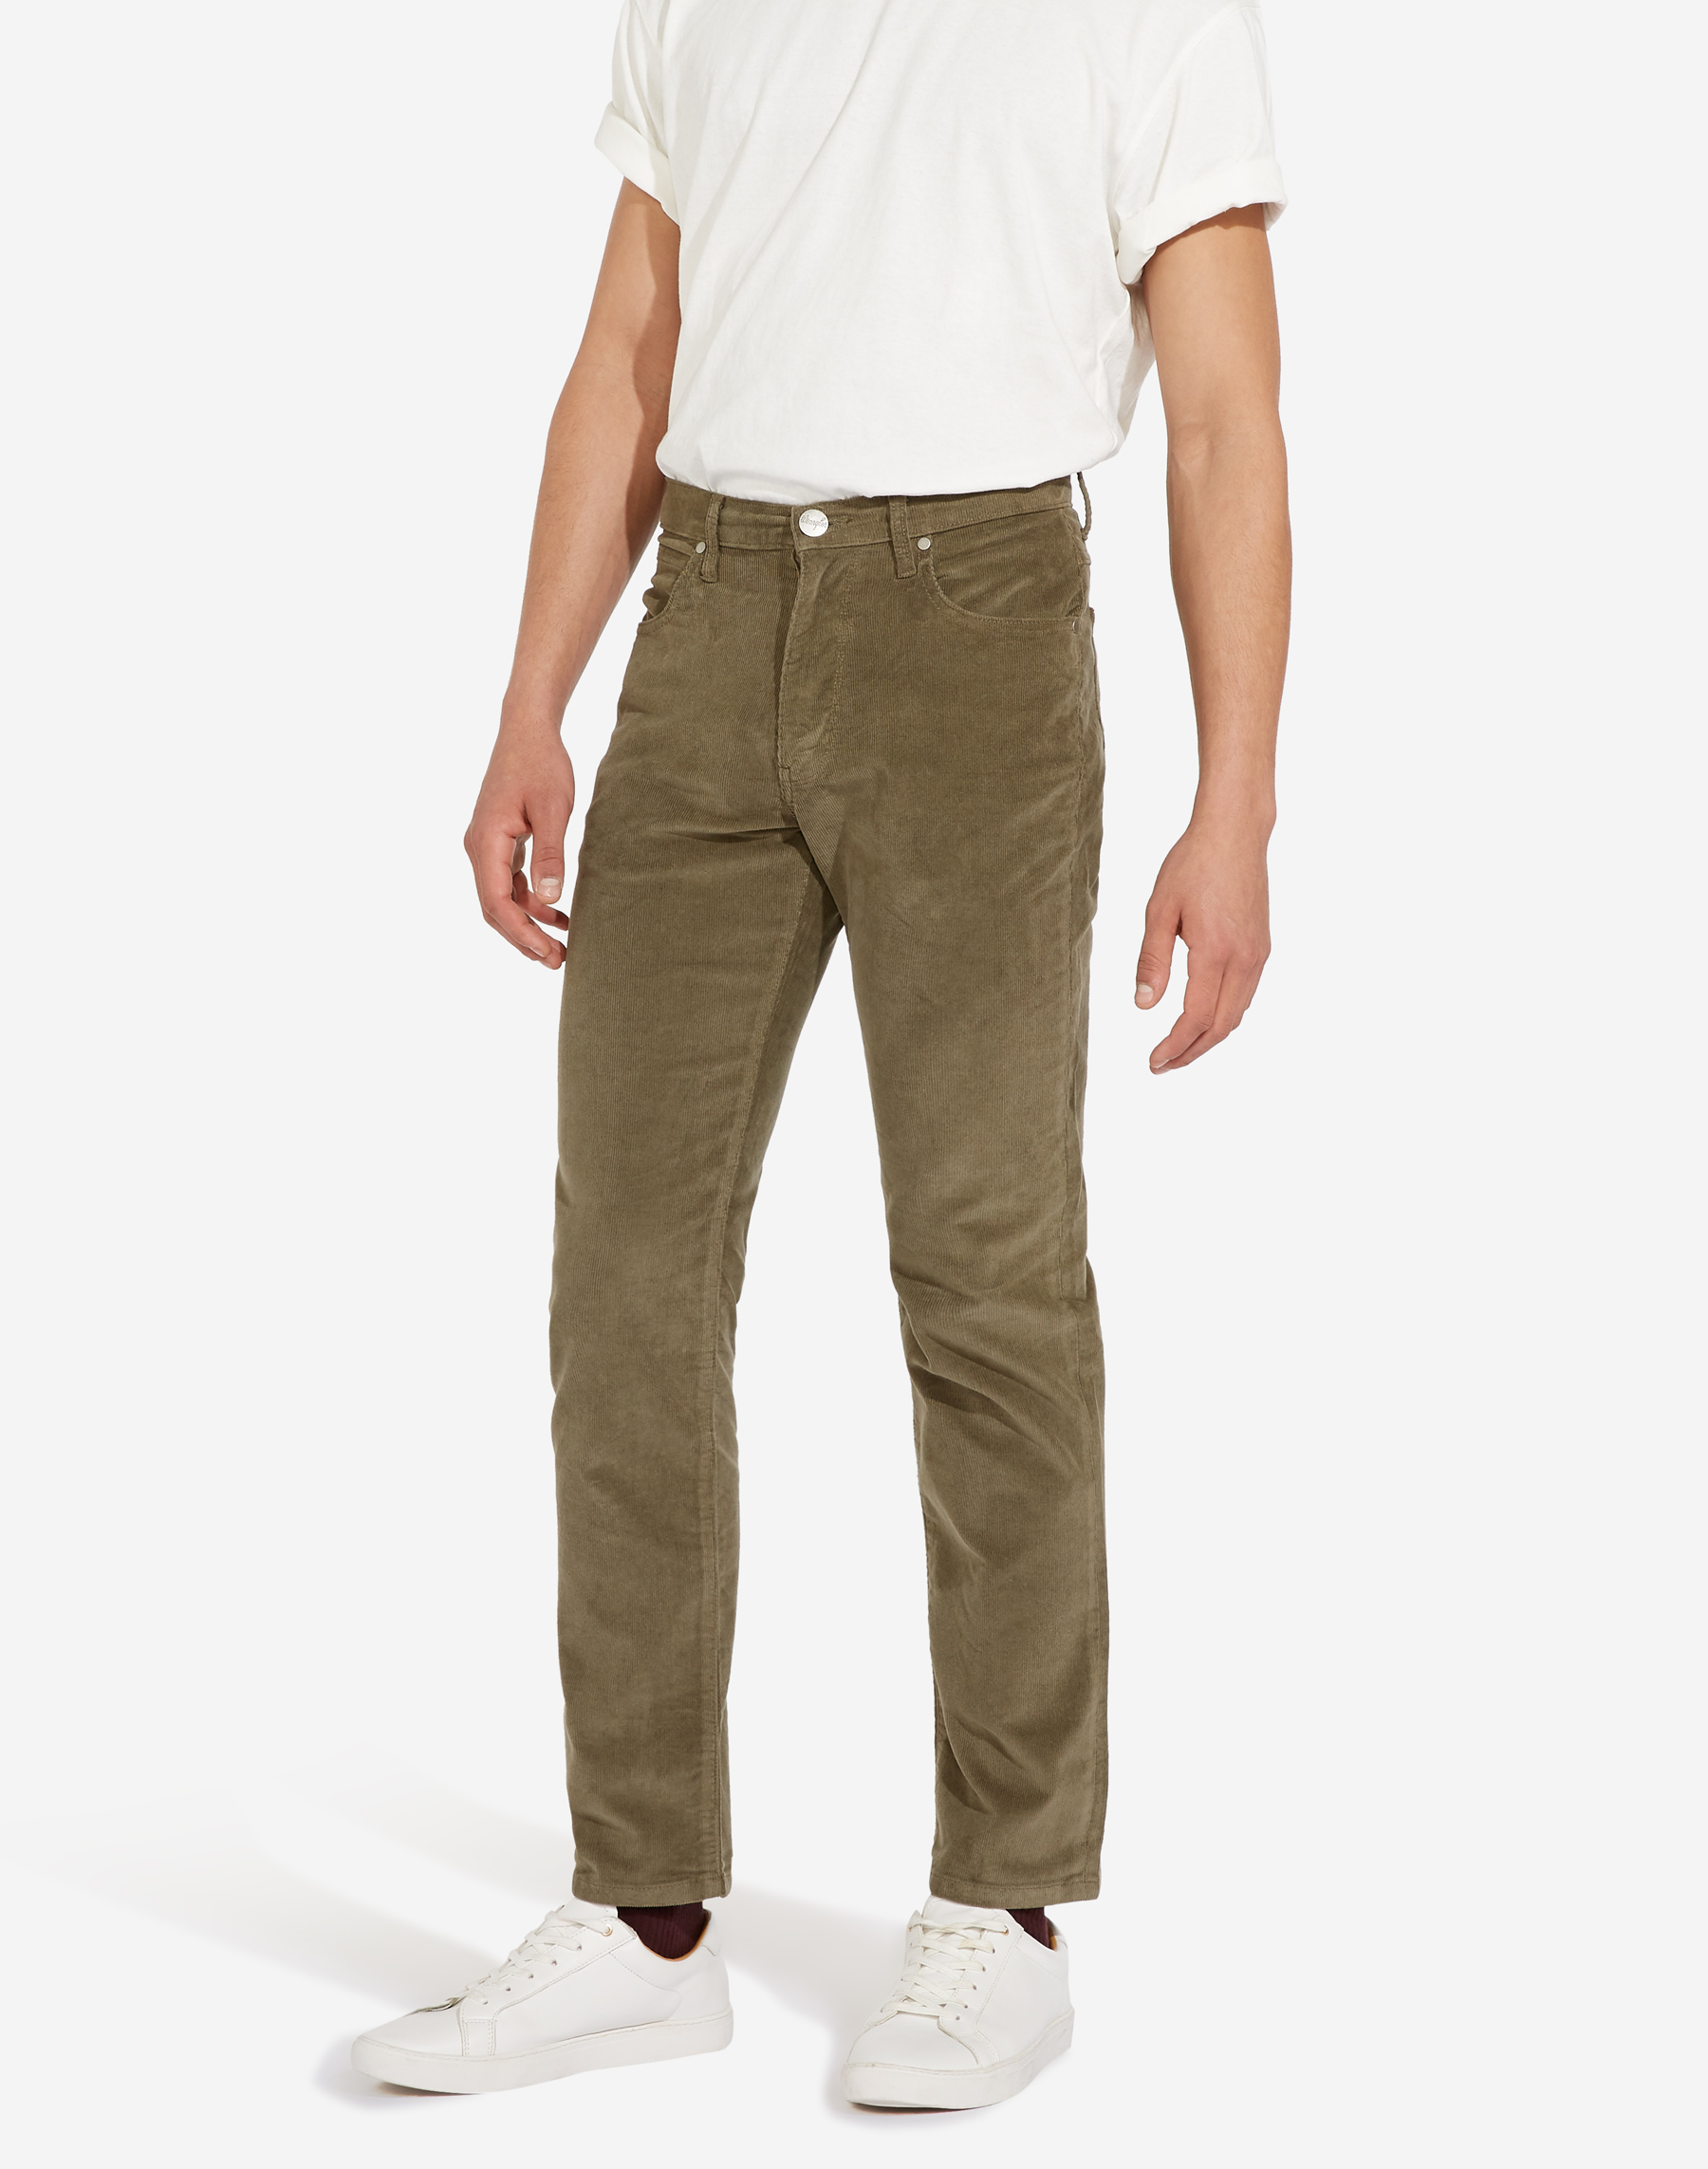 Wrangler Arizona regular pantalons texans de pana d'home W12OEC275 caqui